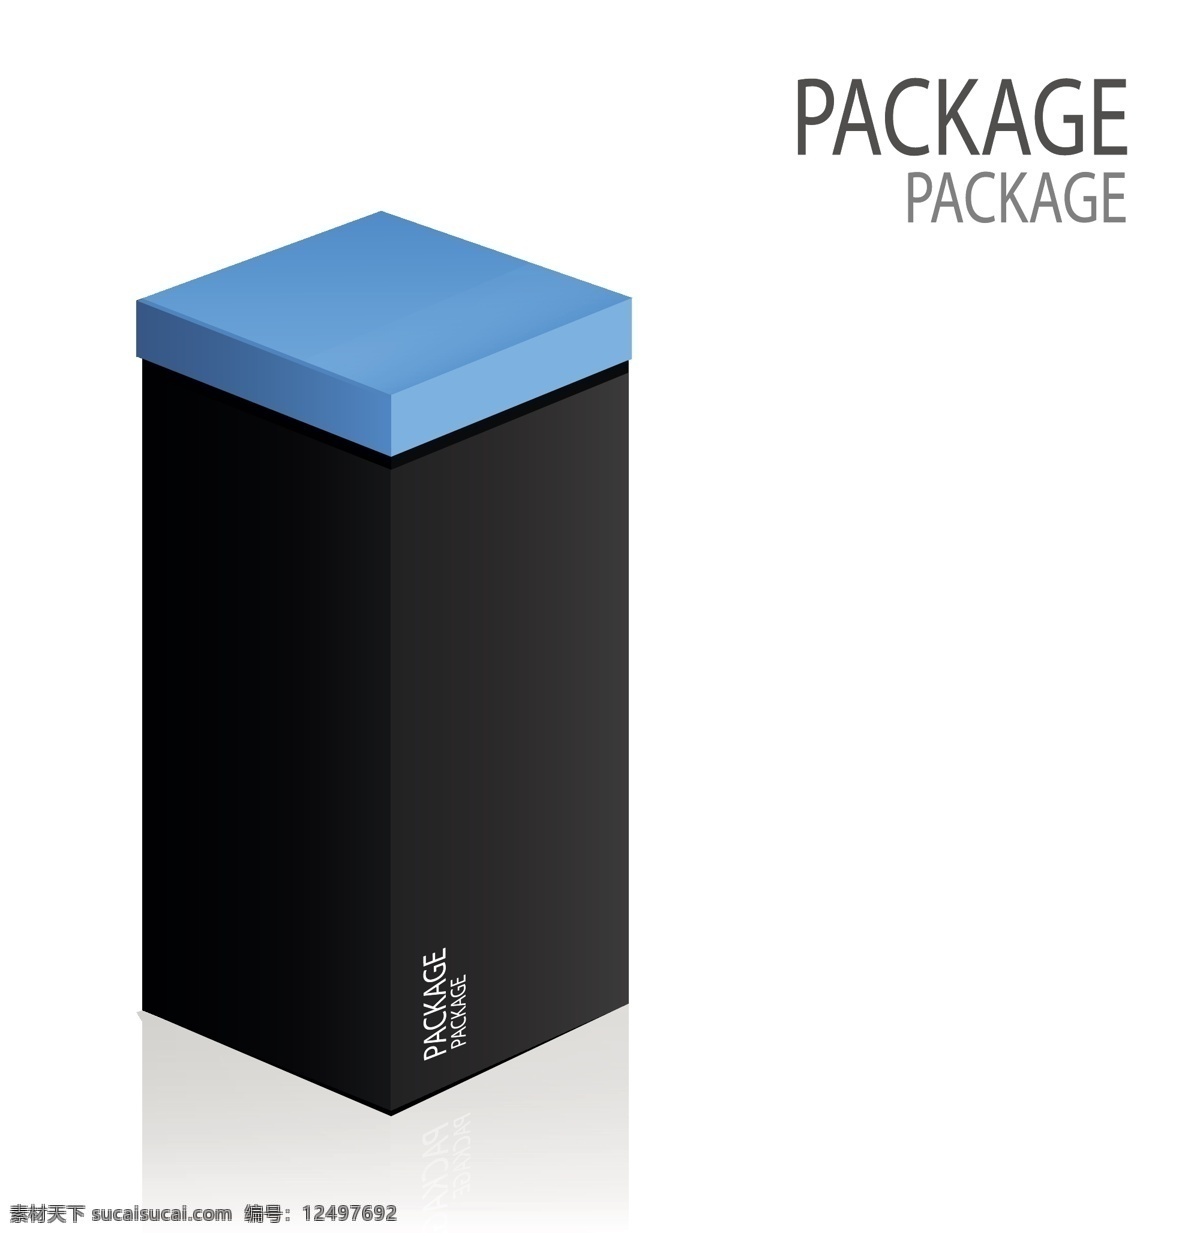 蓝色 包装盒 设计素材 黑色 盒子 高清 源文件 身体 设计元素 广告装饰图案